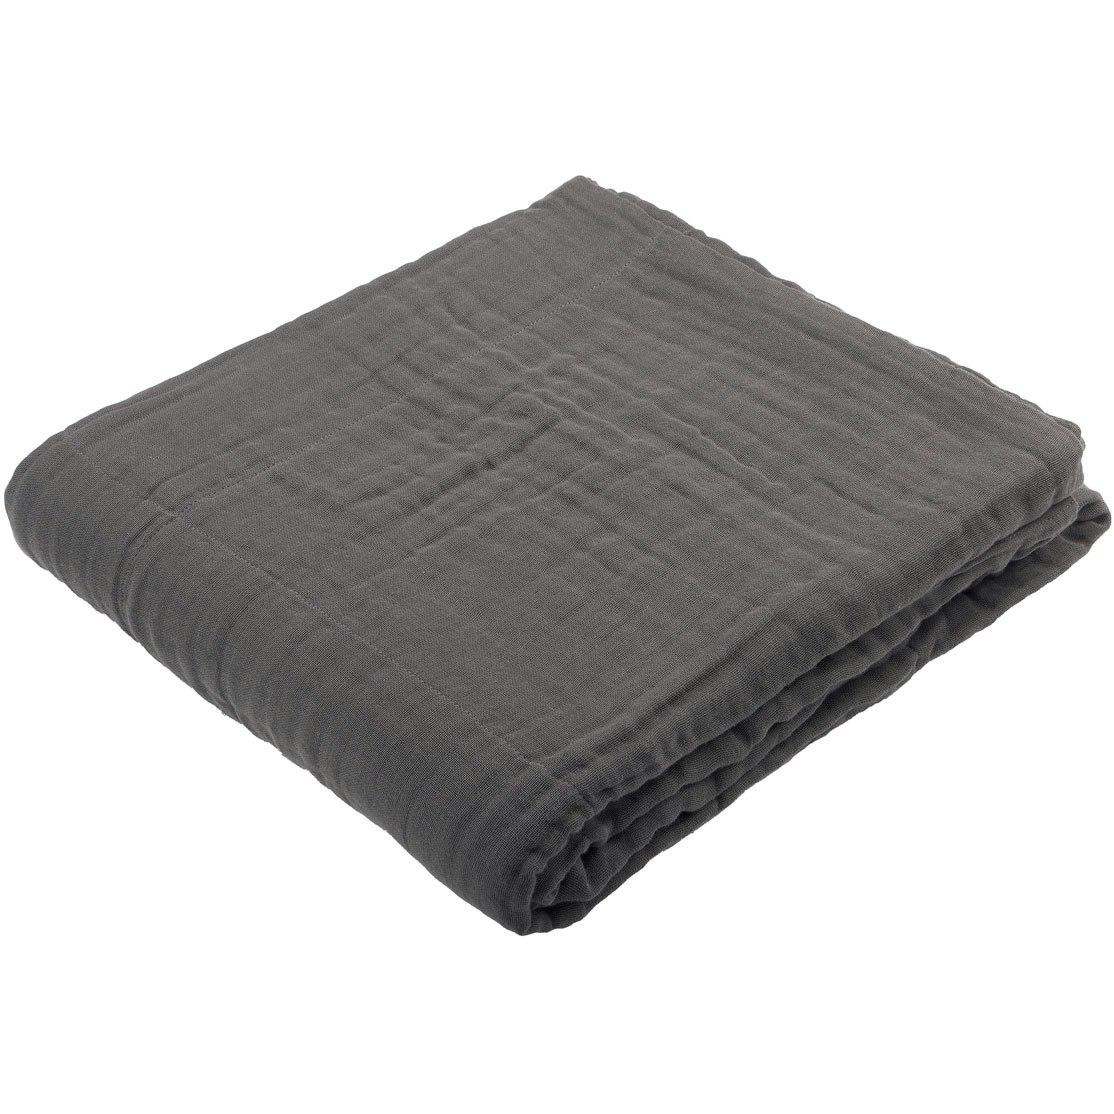 6-Layer Soft Blanket, Dark Grey